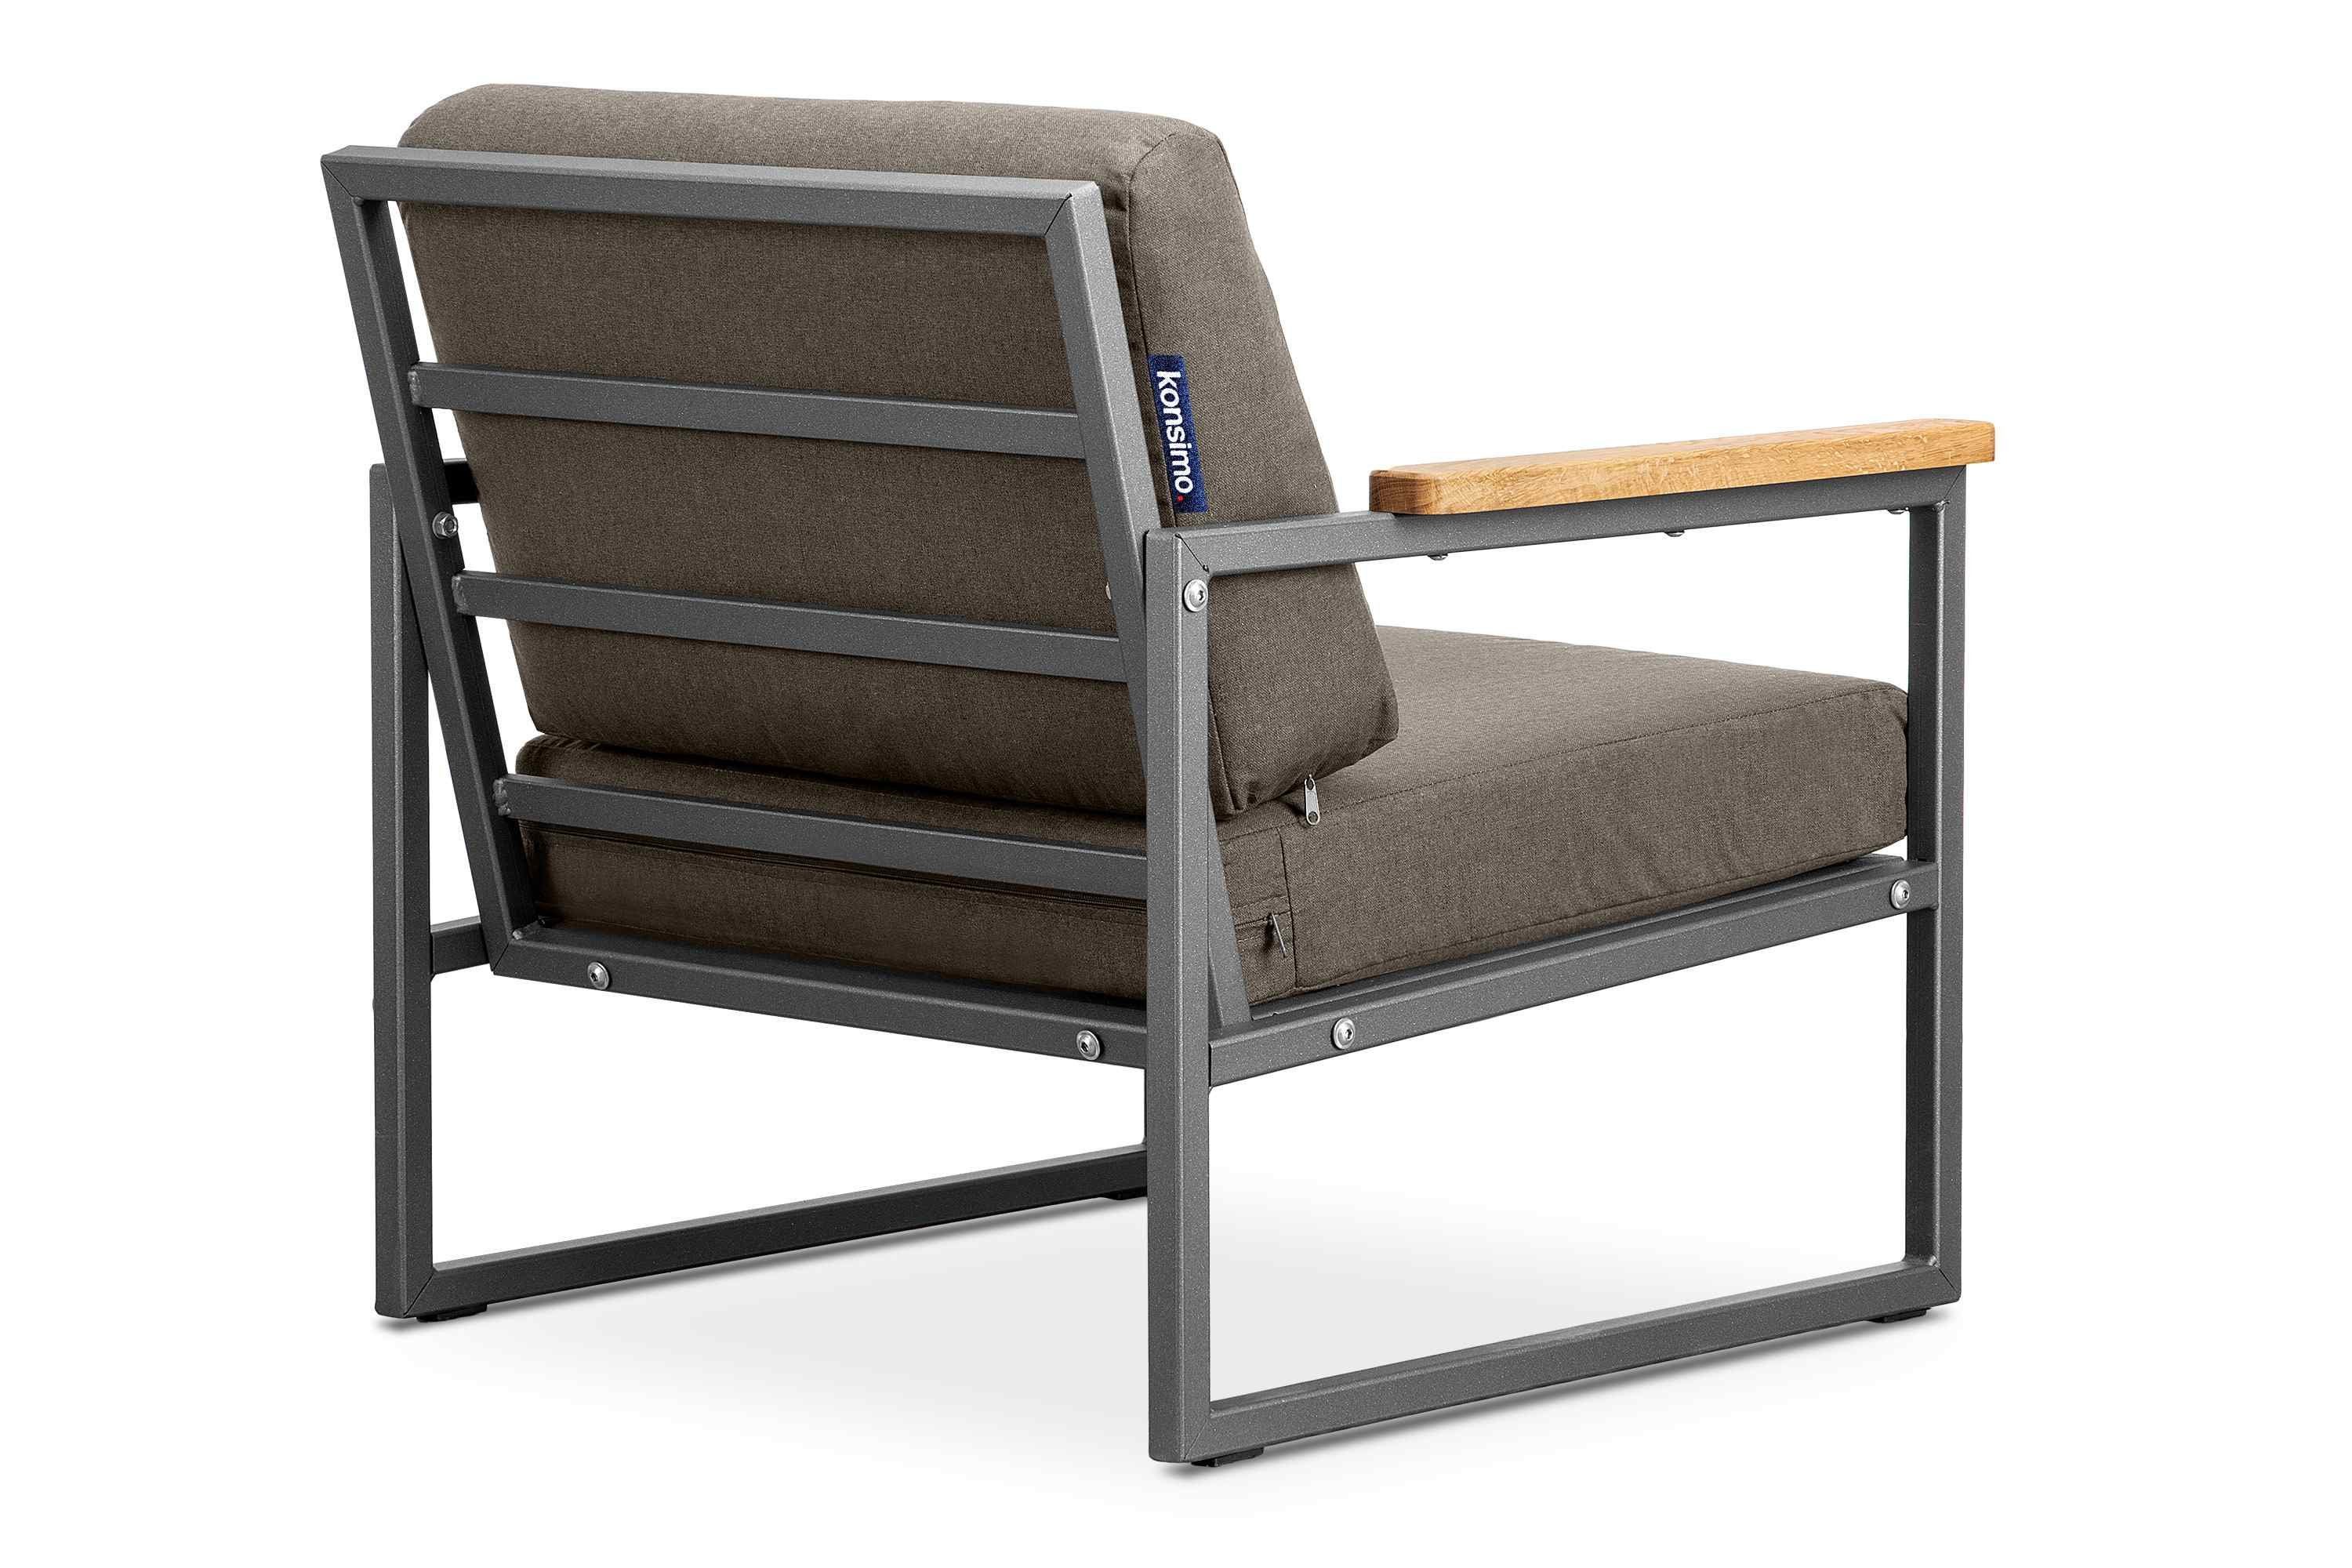 Konsimo Gartensessel TRIBO Europe Sessel), (1x UV-Beständigkeit, geölter schmutz- Made aus Eiche, und anthrazit/beige Handläufe Gartensessel wasserabweisend, in